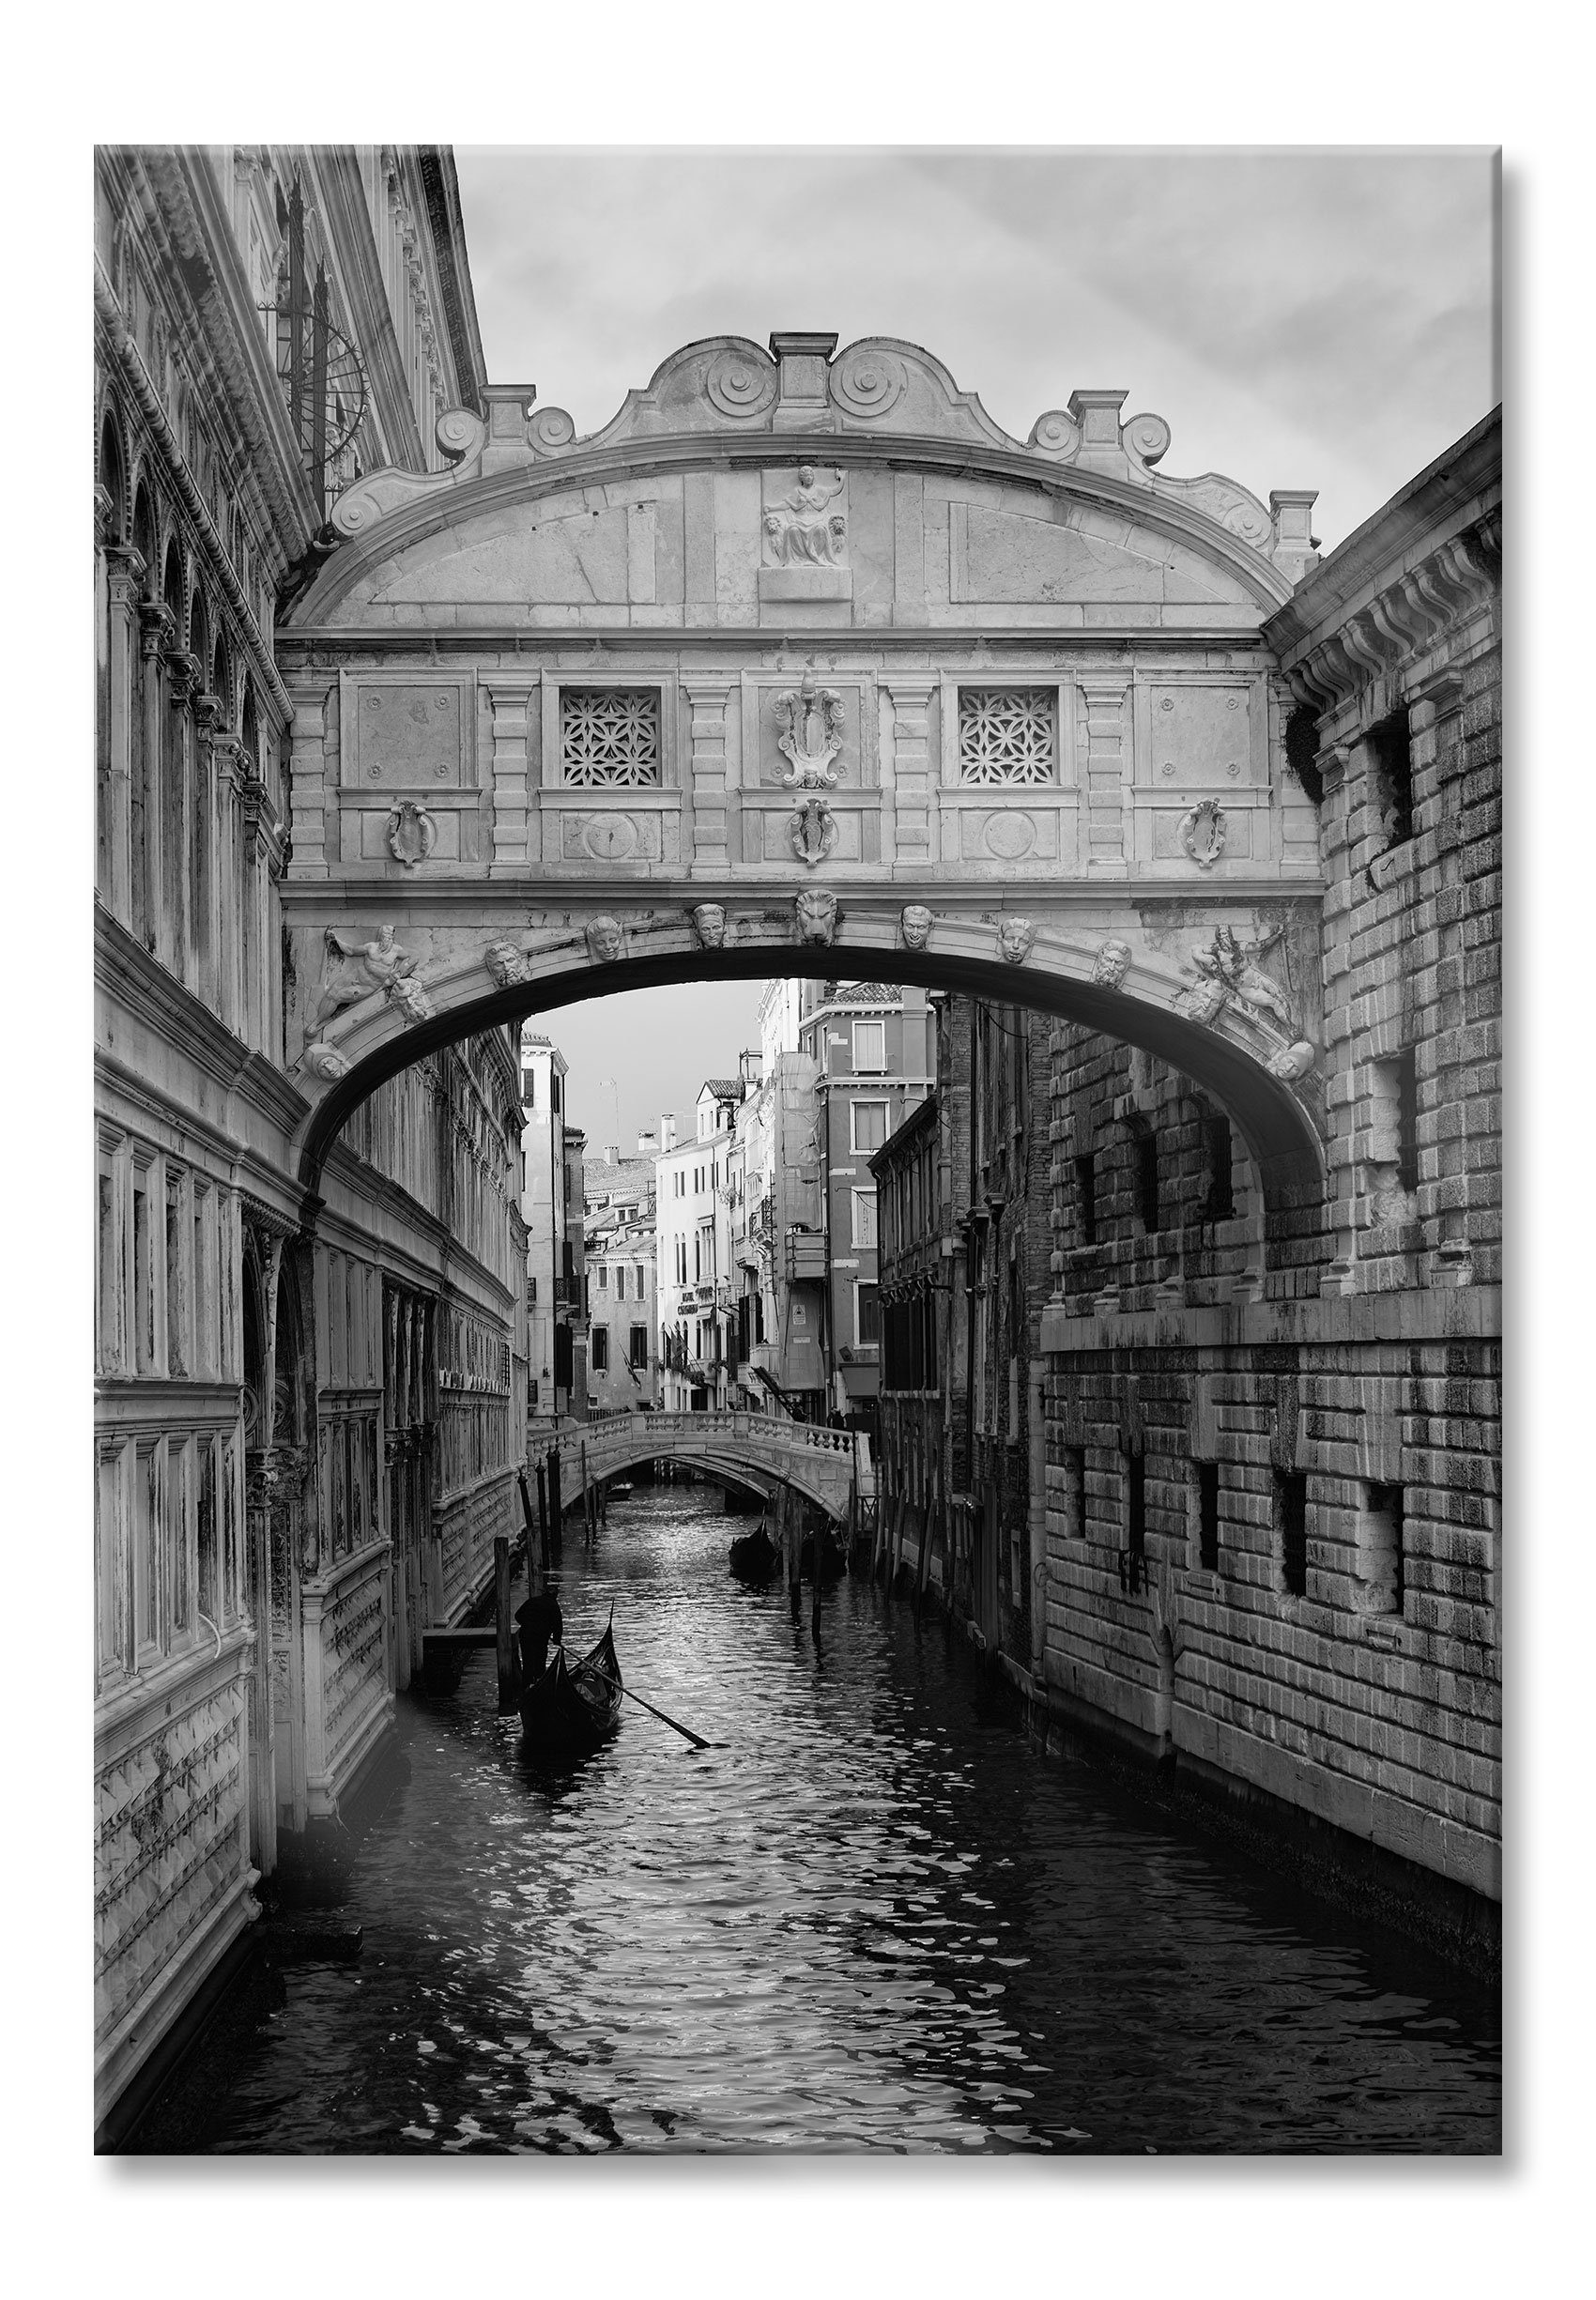 Pixxprint Glasbild Romantischer Kanal in Venedig, Romantischer Kanal in Venedig (1 St), Glasbild aus Echtglas, inkl. Aufhängungen und Abstandshalter